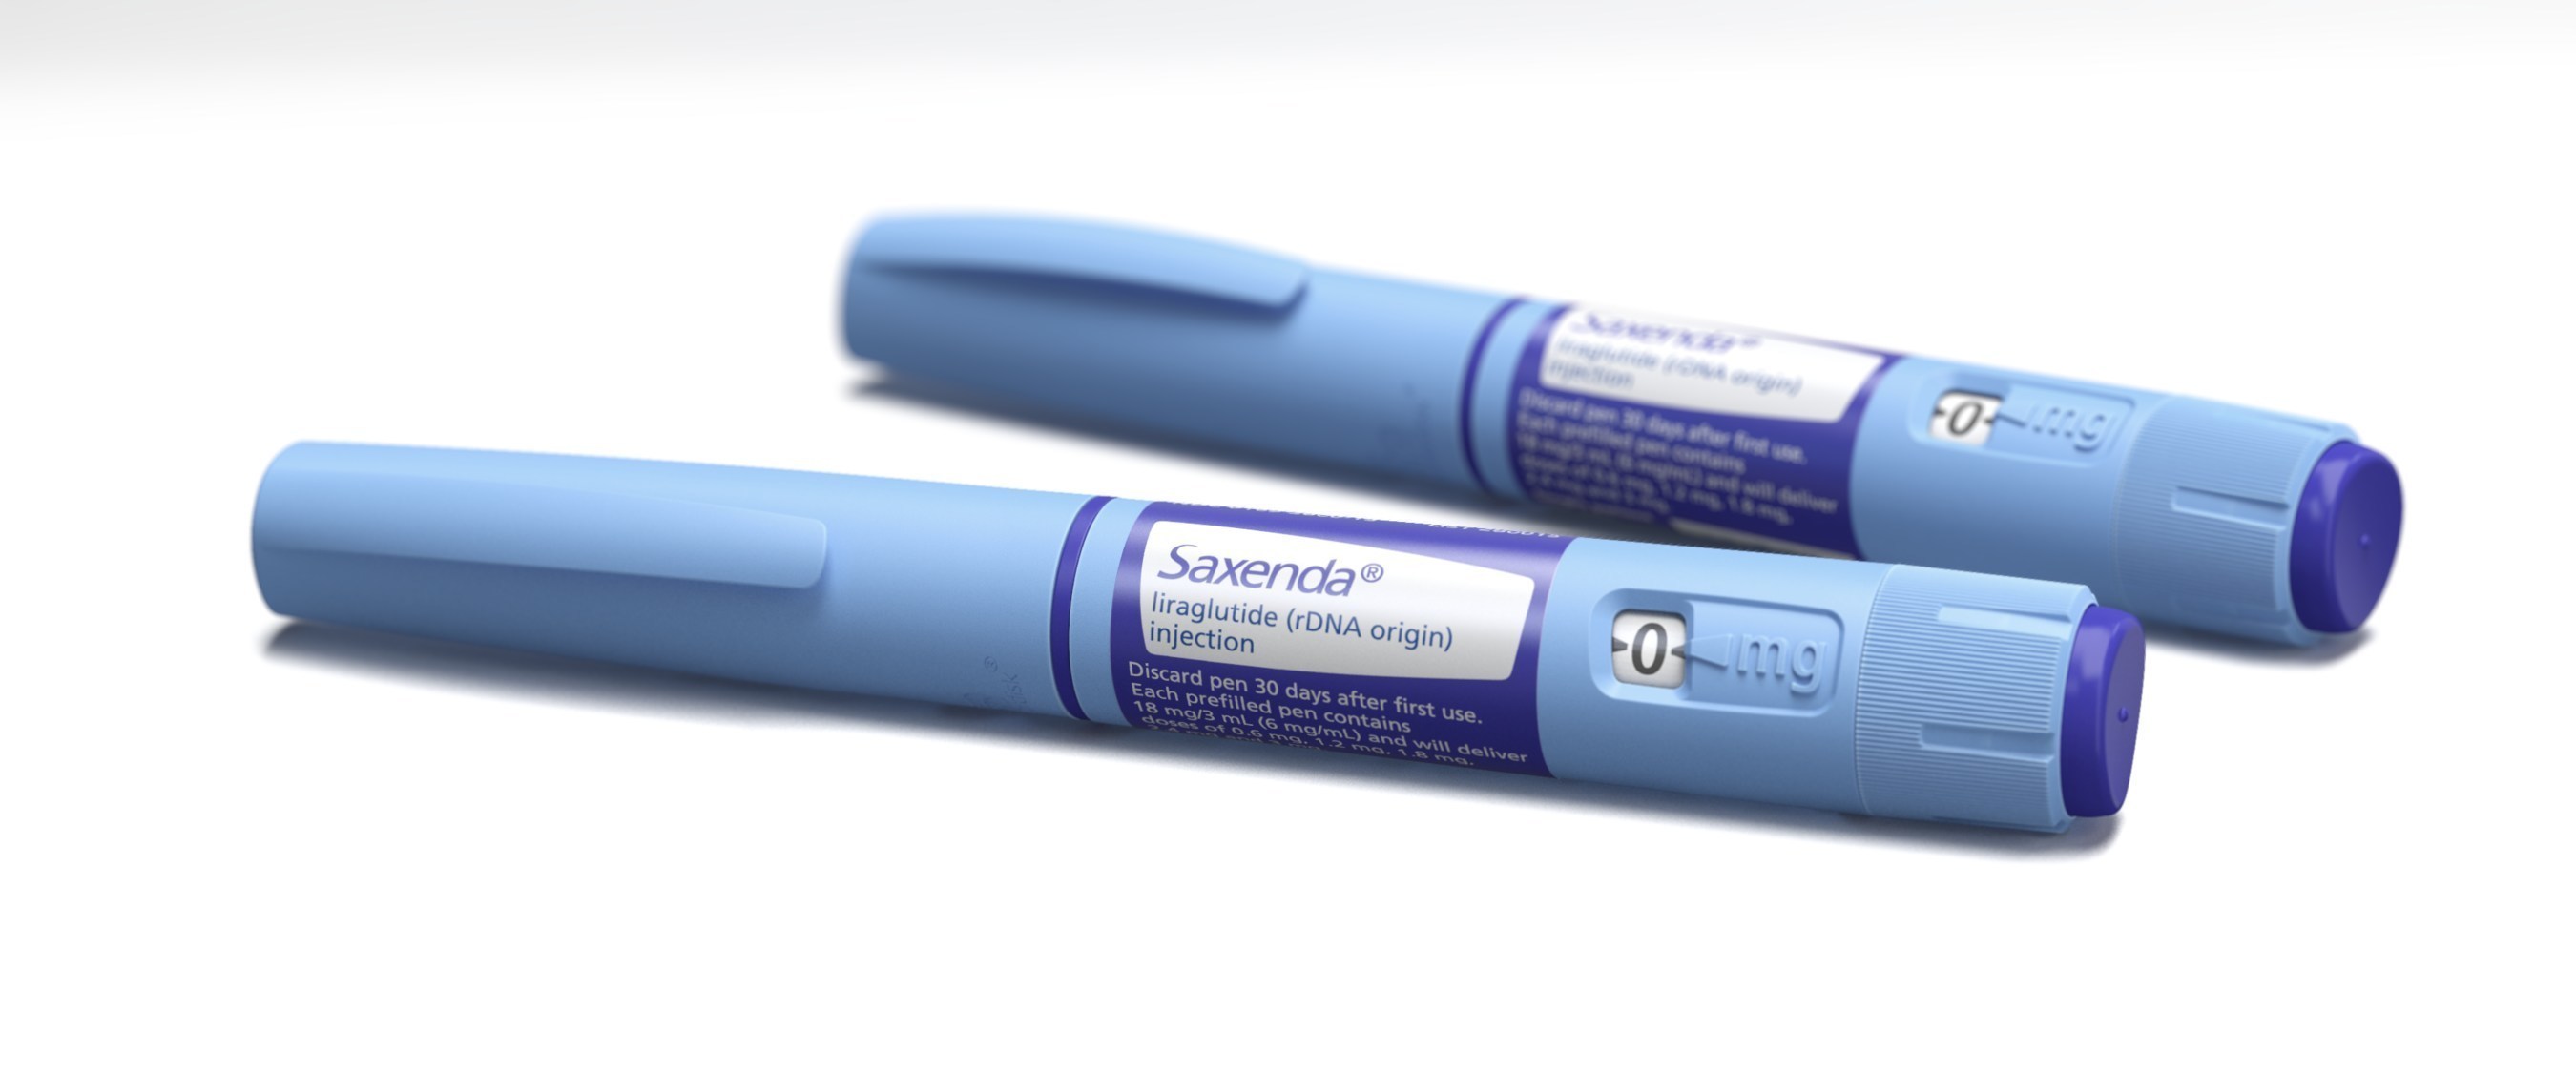 Saxenda(R)  (liraglutide [rDNA origin] injection) pens. Please see full Prescribing Information, including Boxed Warning, for Saxenda(R) at Saxenda.com.